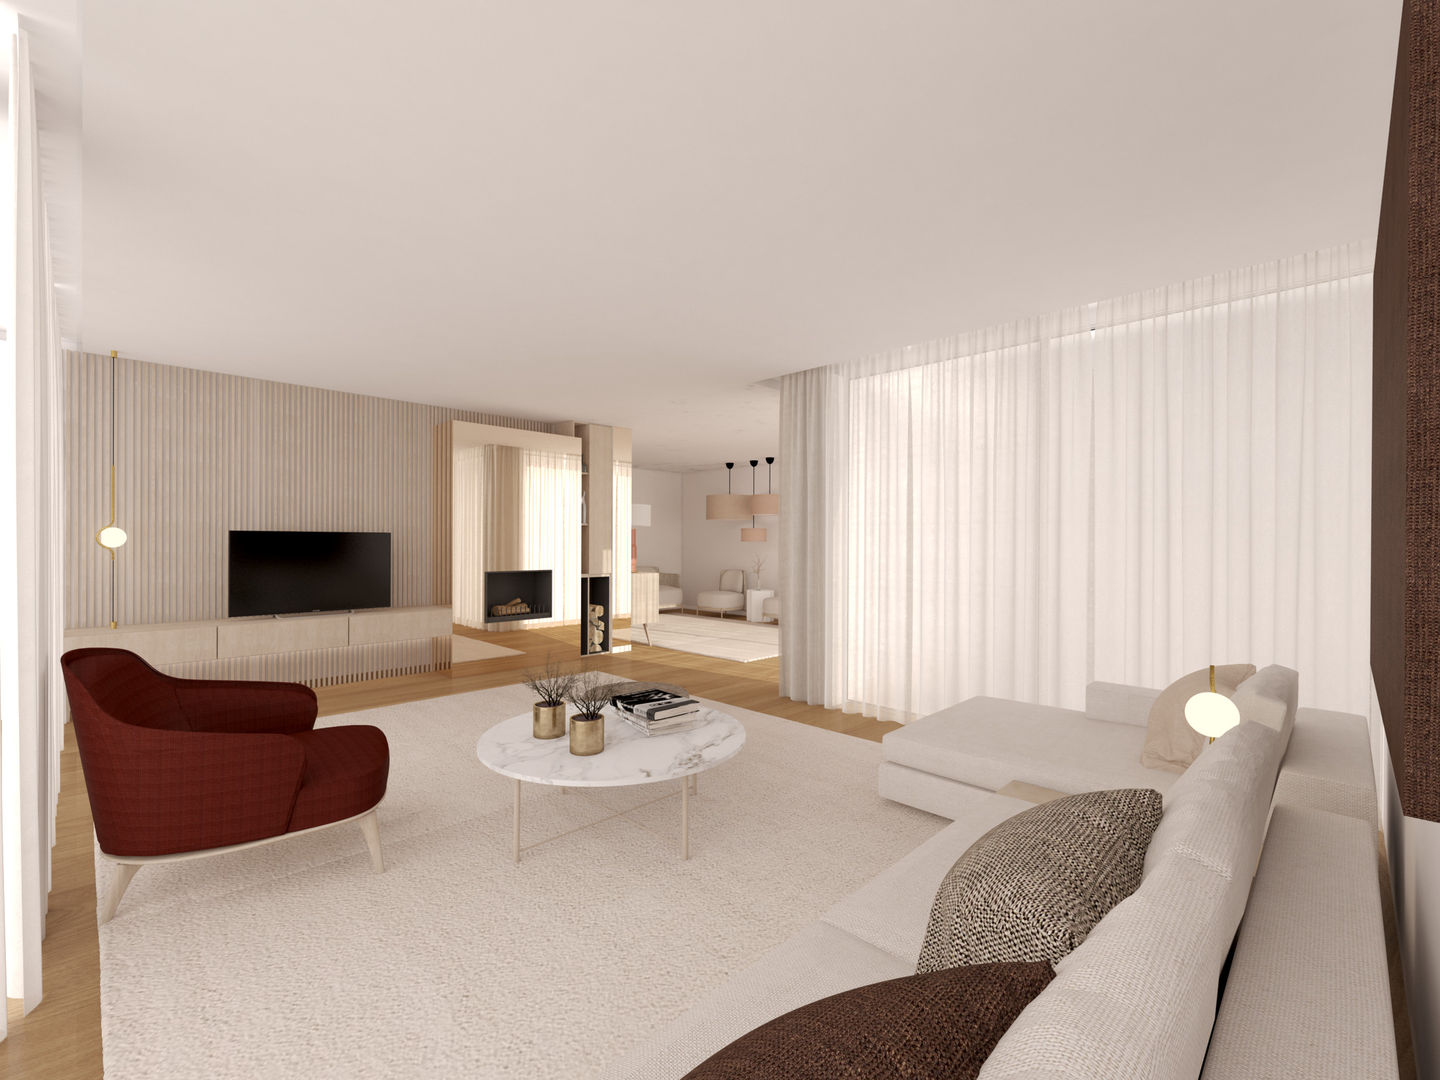 Moradia em Tagilde, Vizela - 2020, MIA arquitetos MIA arquitetos Modern living room